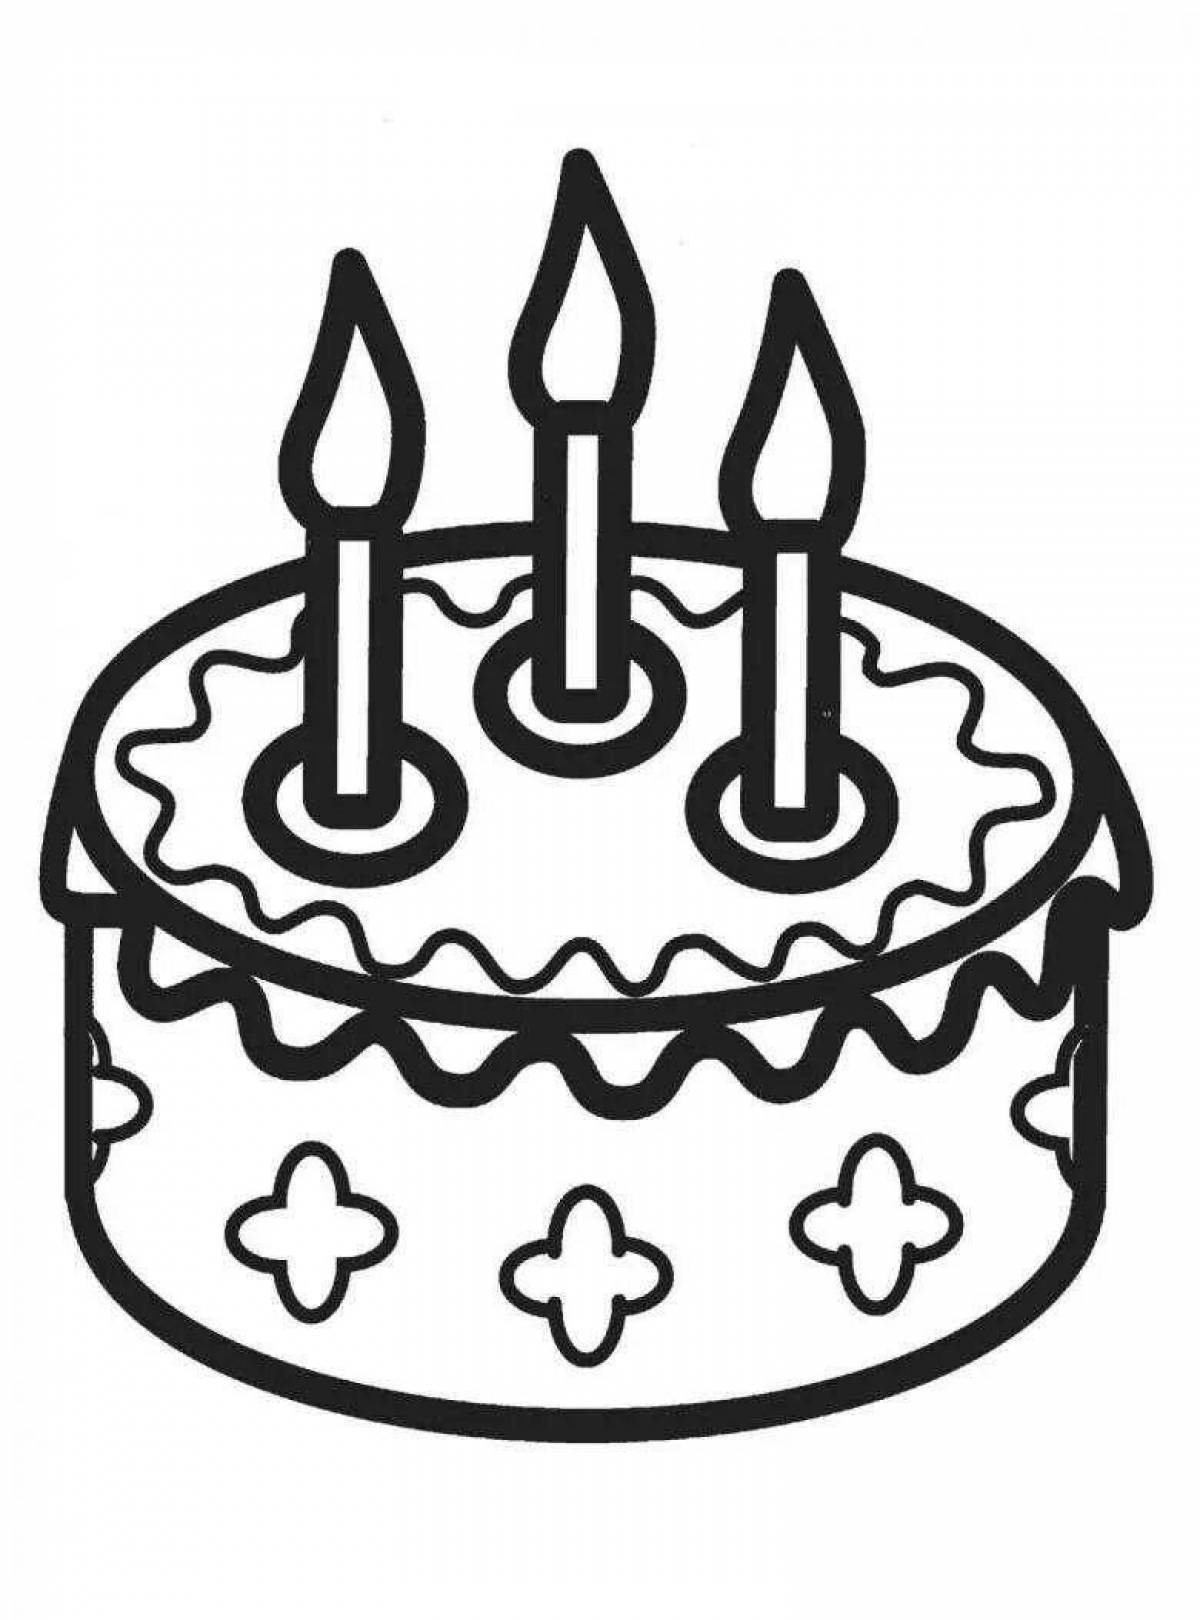 Торт распечатать а4. Раскраска торт. Торт раскраска для детей. Раскраска торт на день рождения. Торт картинка раскраска.